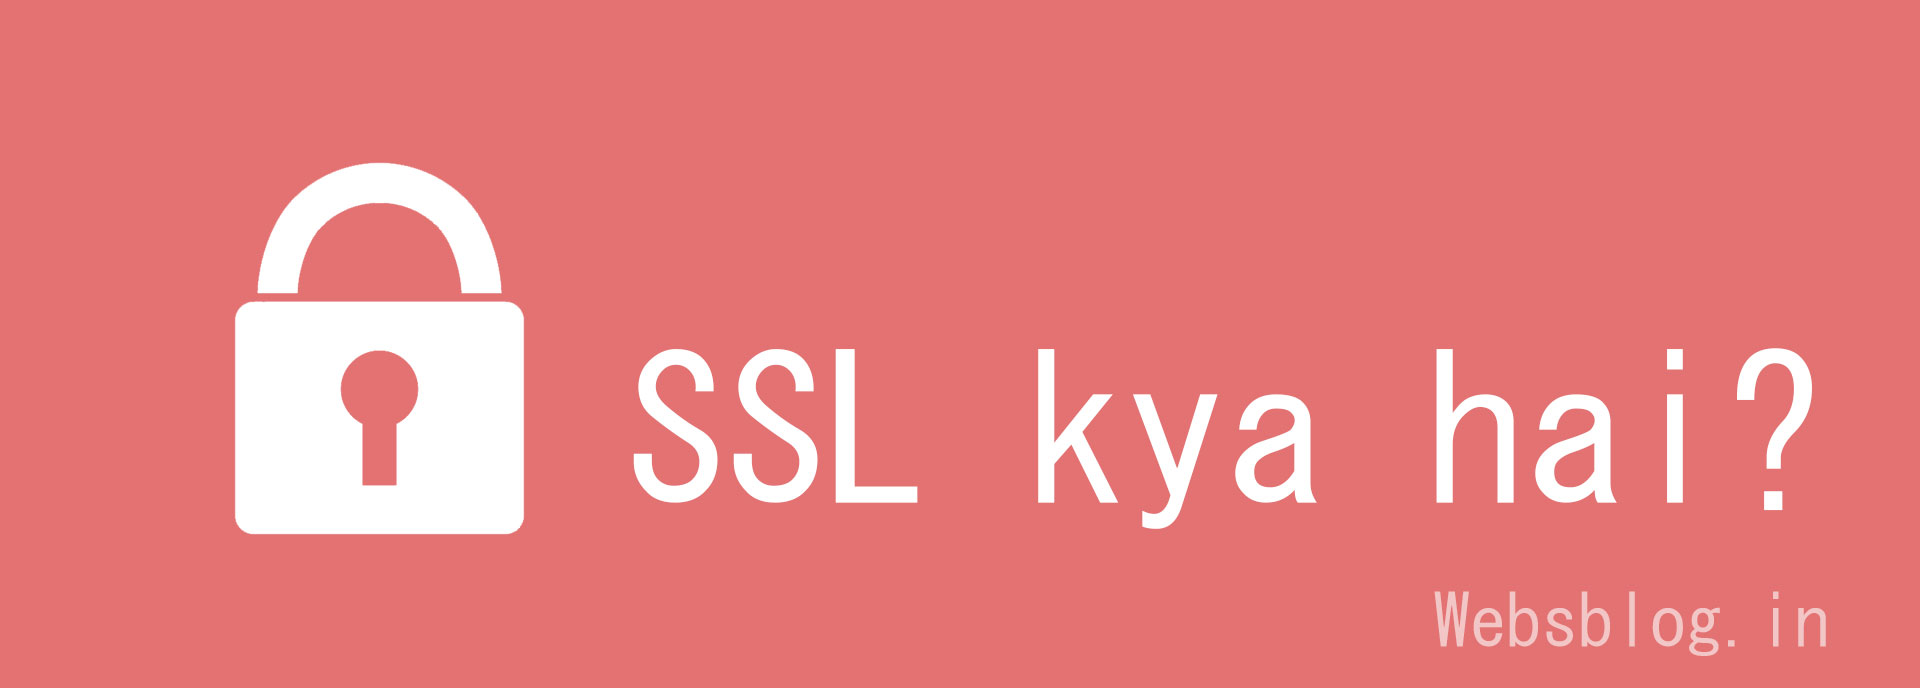 SSL kya hai